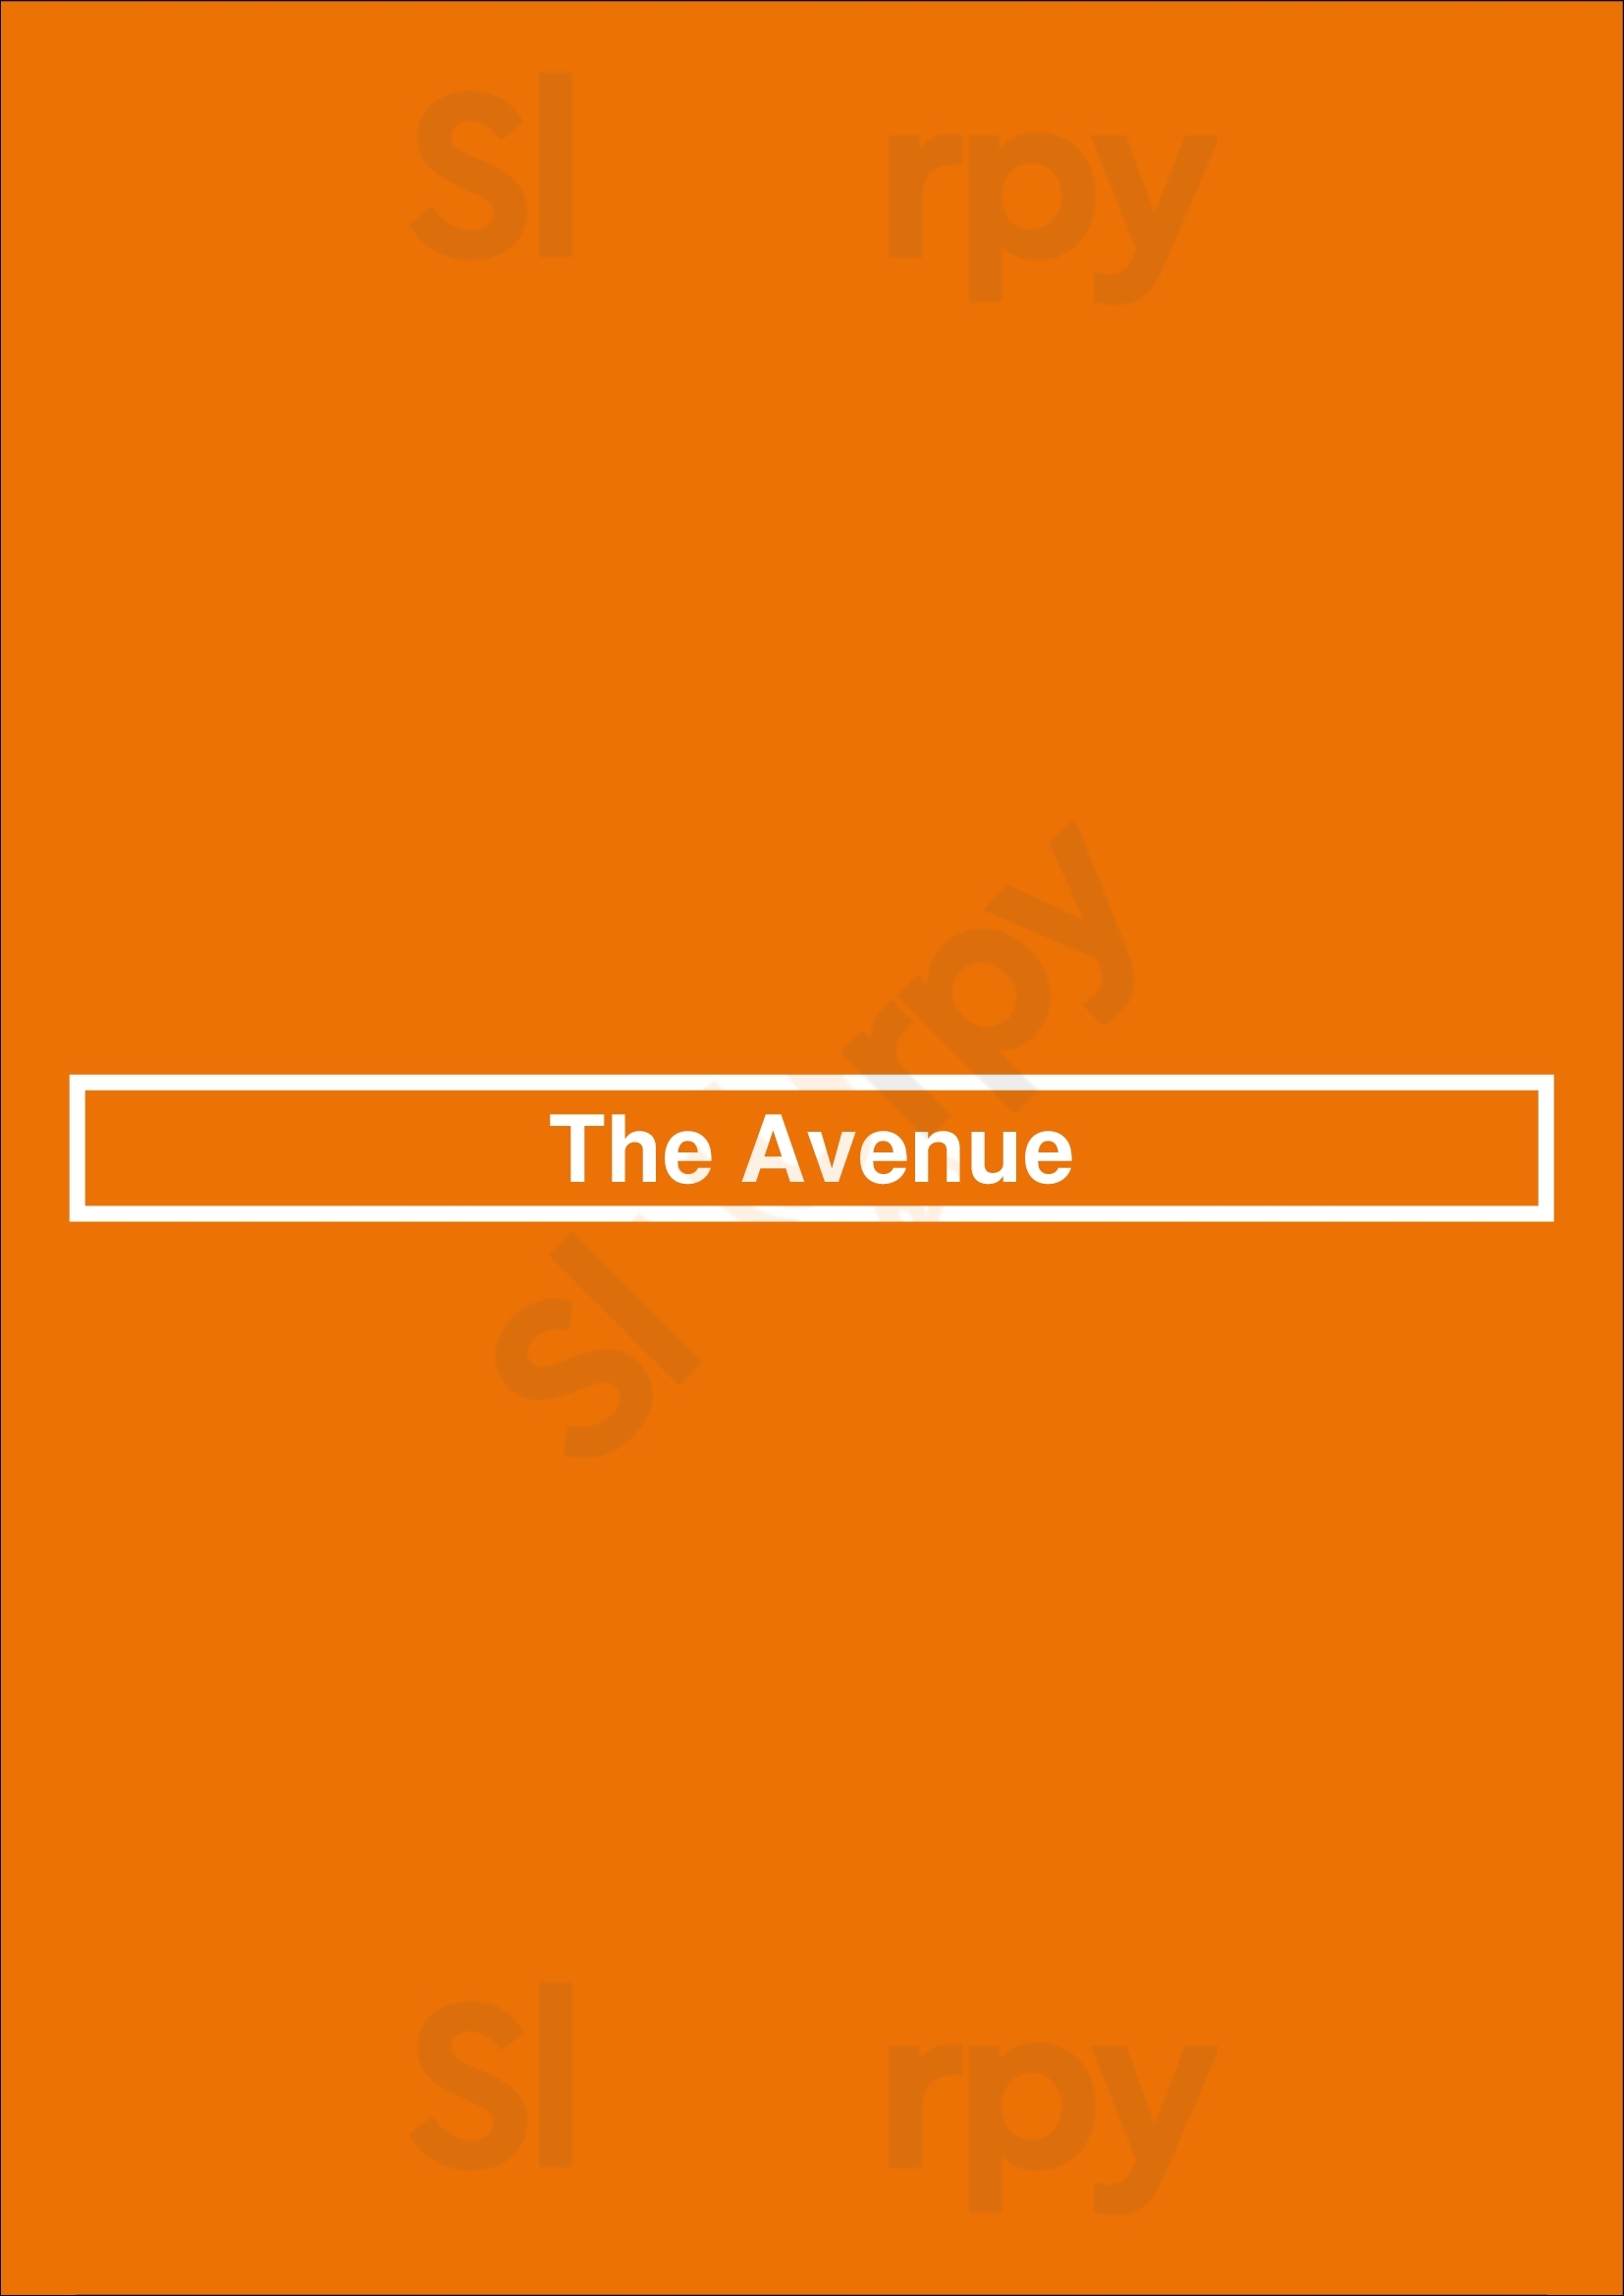 The Avenue Toronto Menu - 1